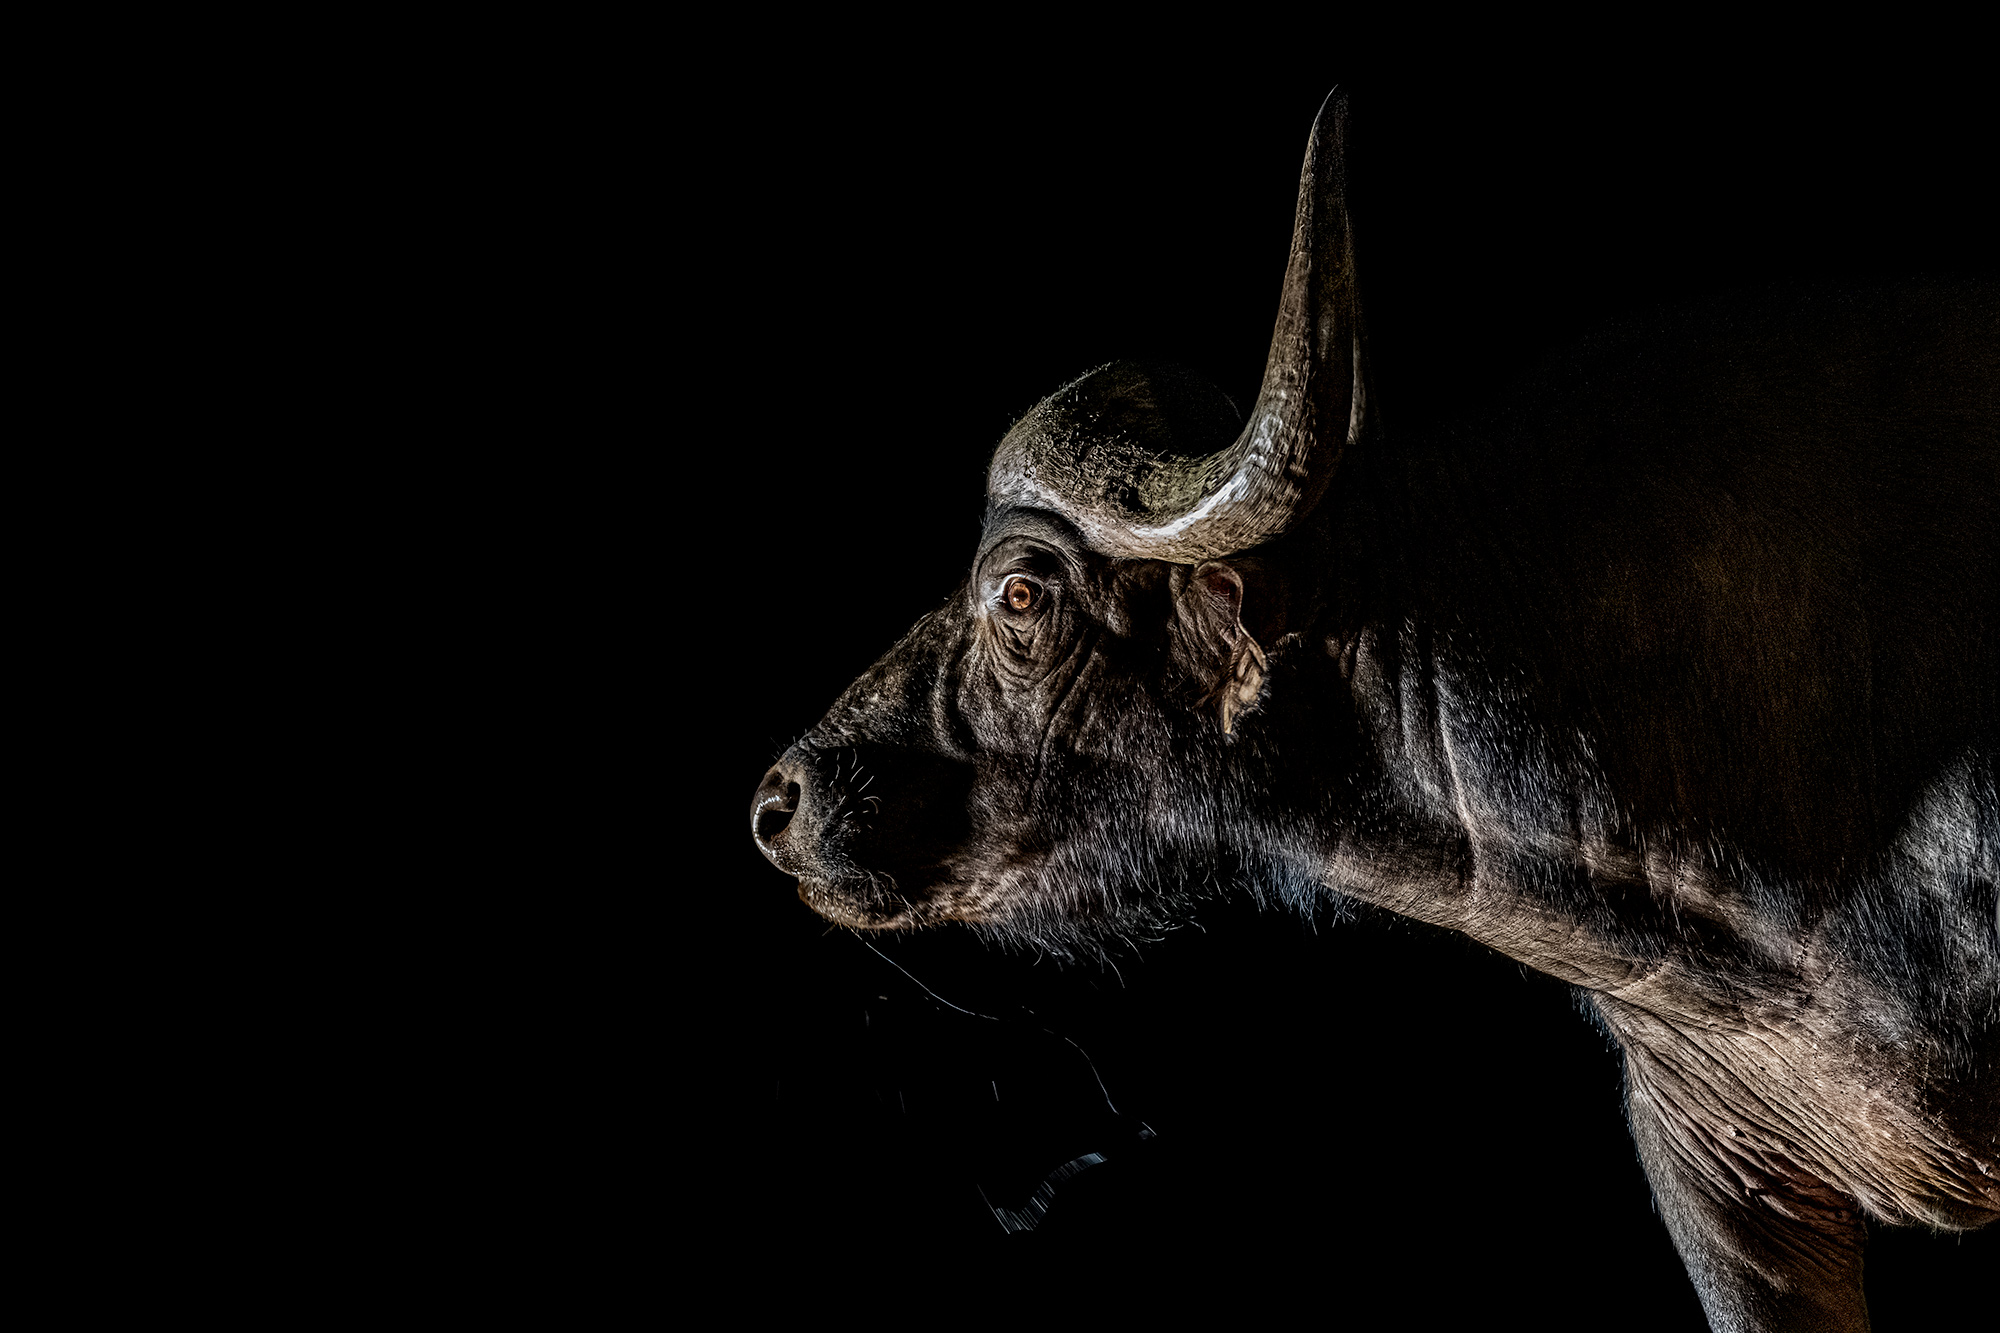 Büffel trinkt Wasser in der Nacht. Fotografiert aus einem unterirdischen Fotoversteck.